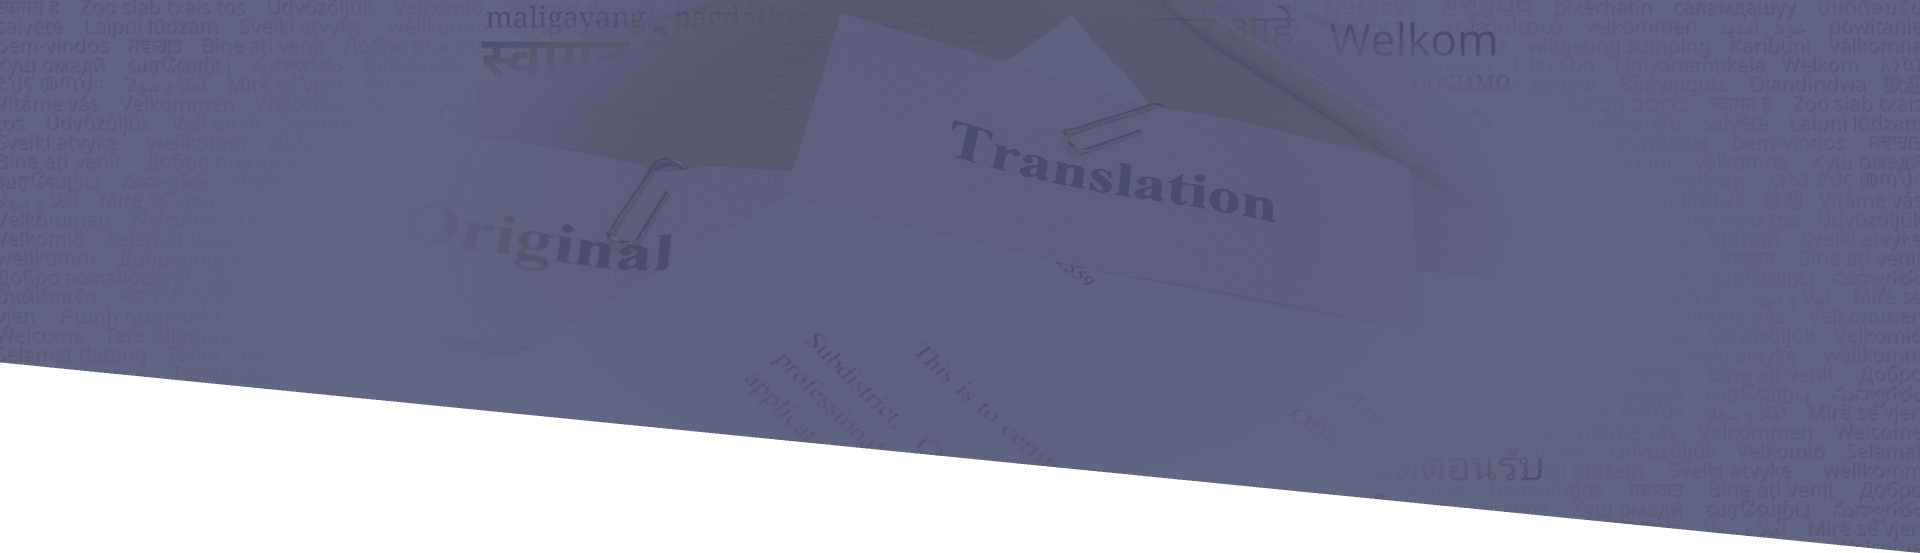 Language translation